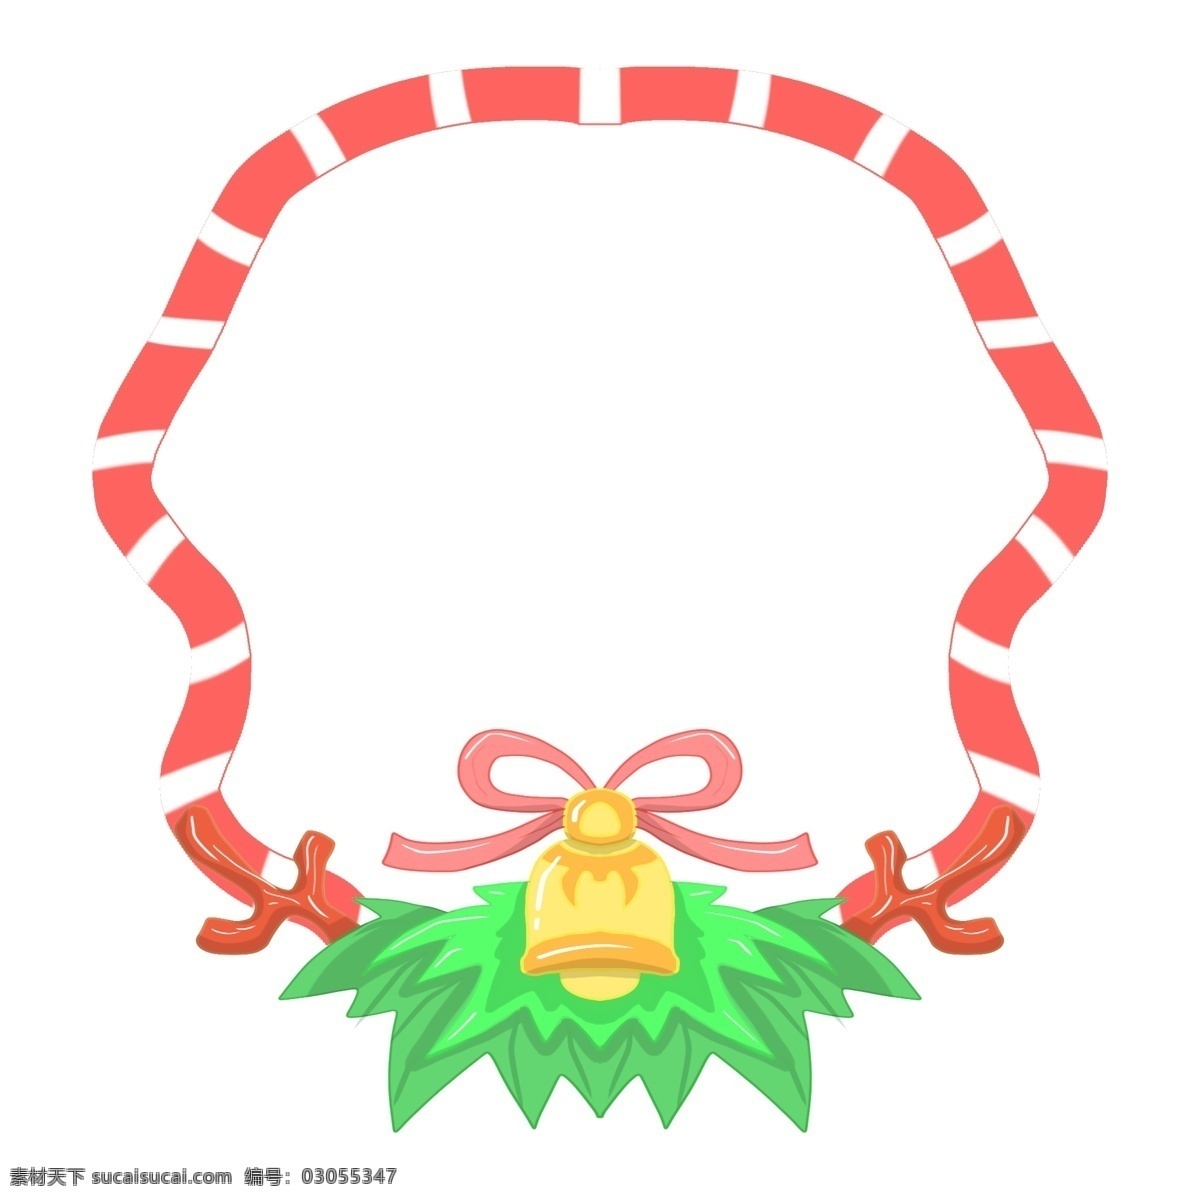 圣诞节 铃铛 边框 插画 红色的蝴蝶结 蝴蝶结装饰 漂亮的边框 唯美边框 黄色的铃铛